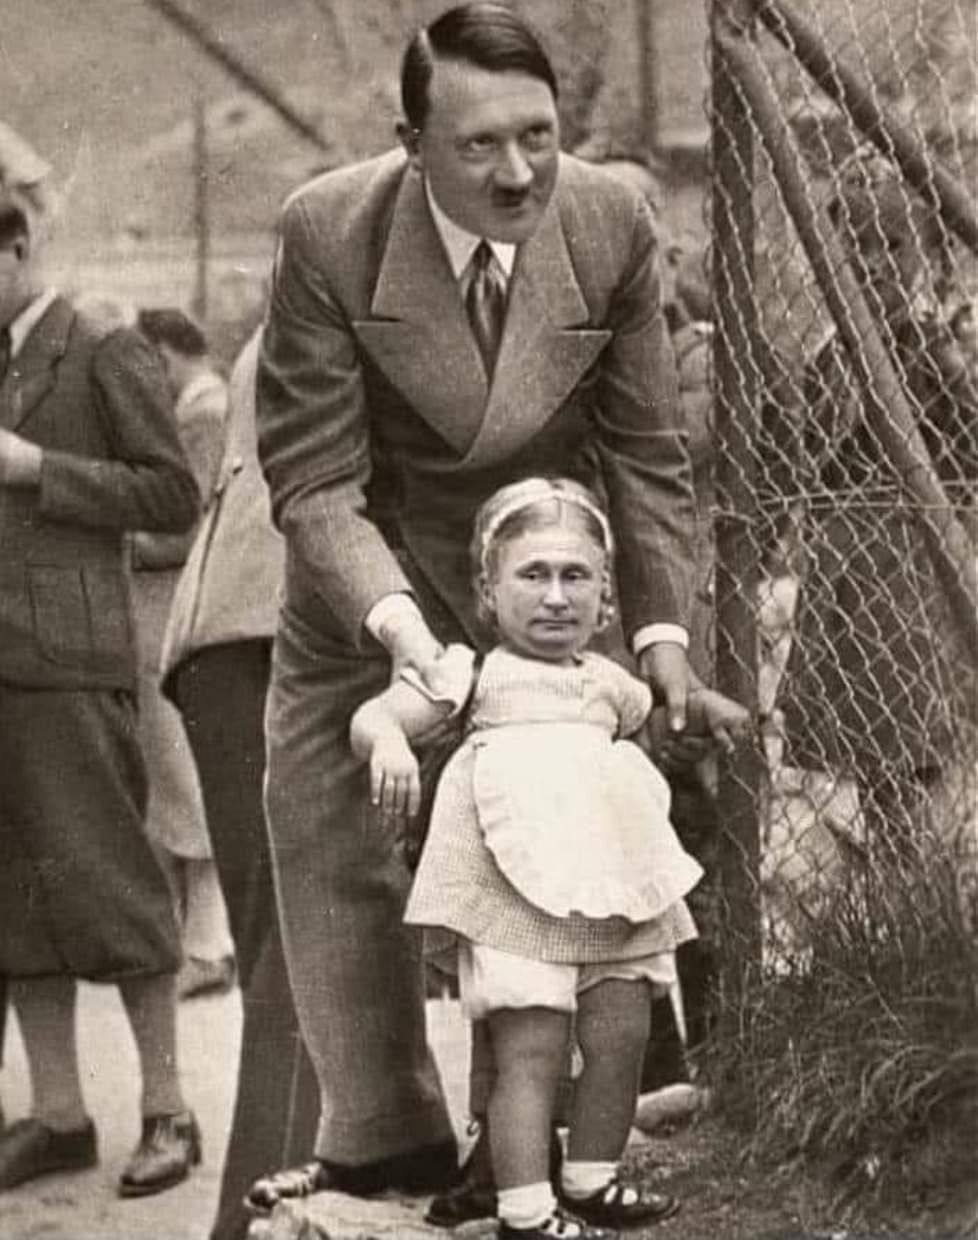 Невзоров показал фото "нацистской семейки" Гитлера с Путиным